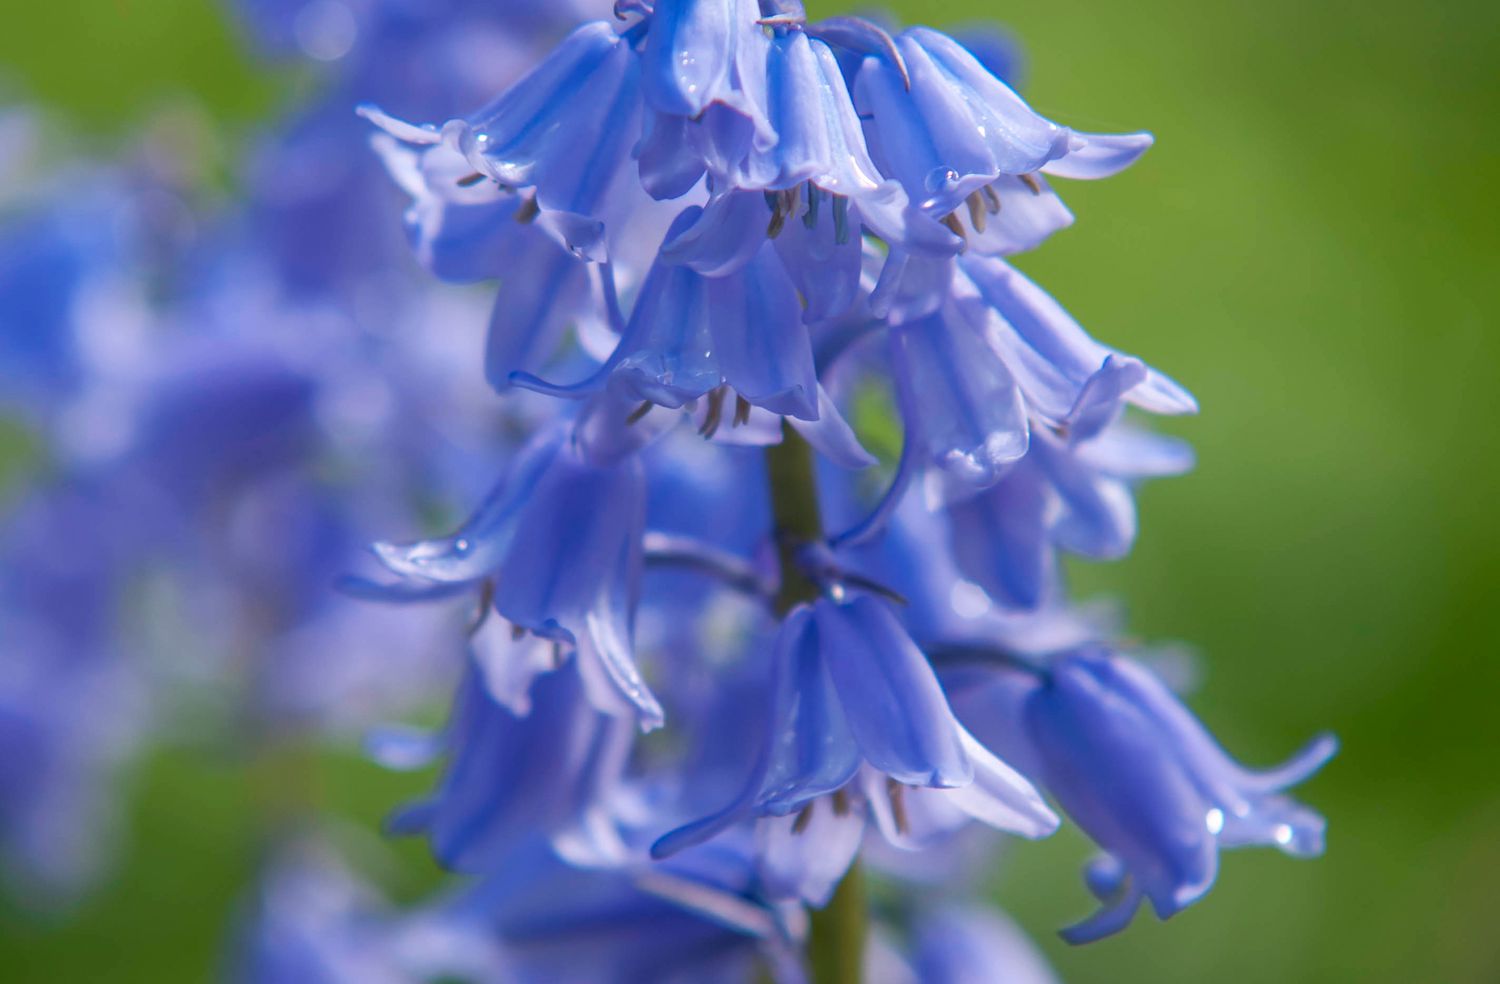 Spanischer Blauglockenstiel mit blauen Blüten in Nahaufnahme